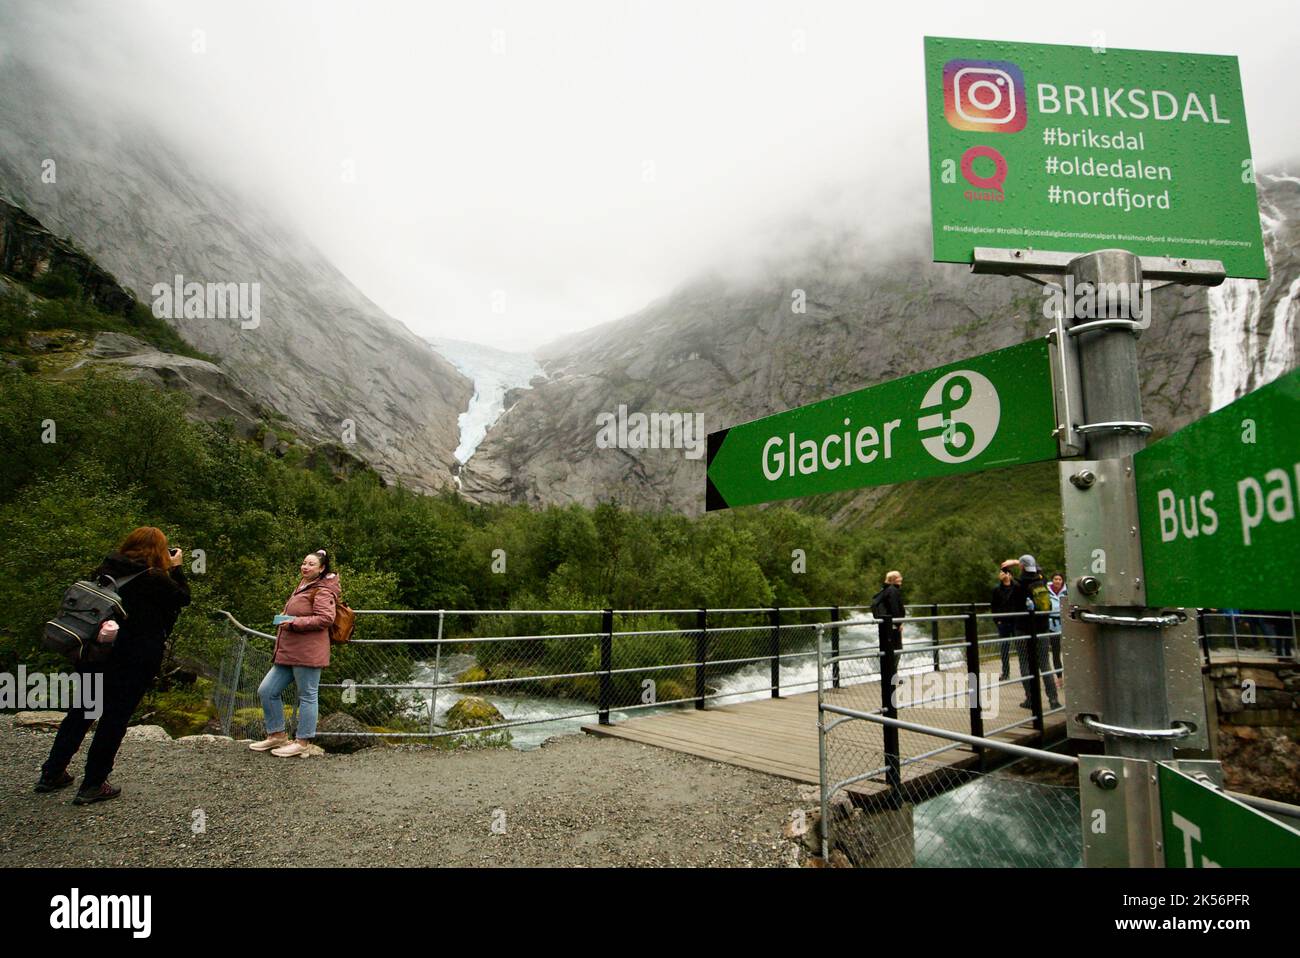 Ein Wegweiser zum Briksdal Glacier / Briksdalsbreen im Jostedalsbreen / Jostedal Glacier National Park, Norwegen. Wegweiser zum Gletscher #Briksdal. Stockfoto